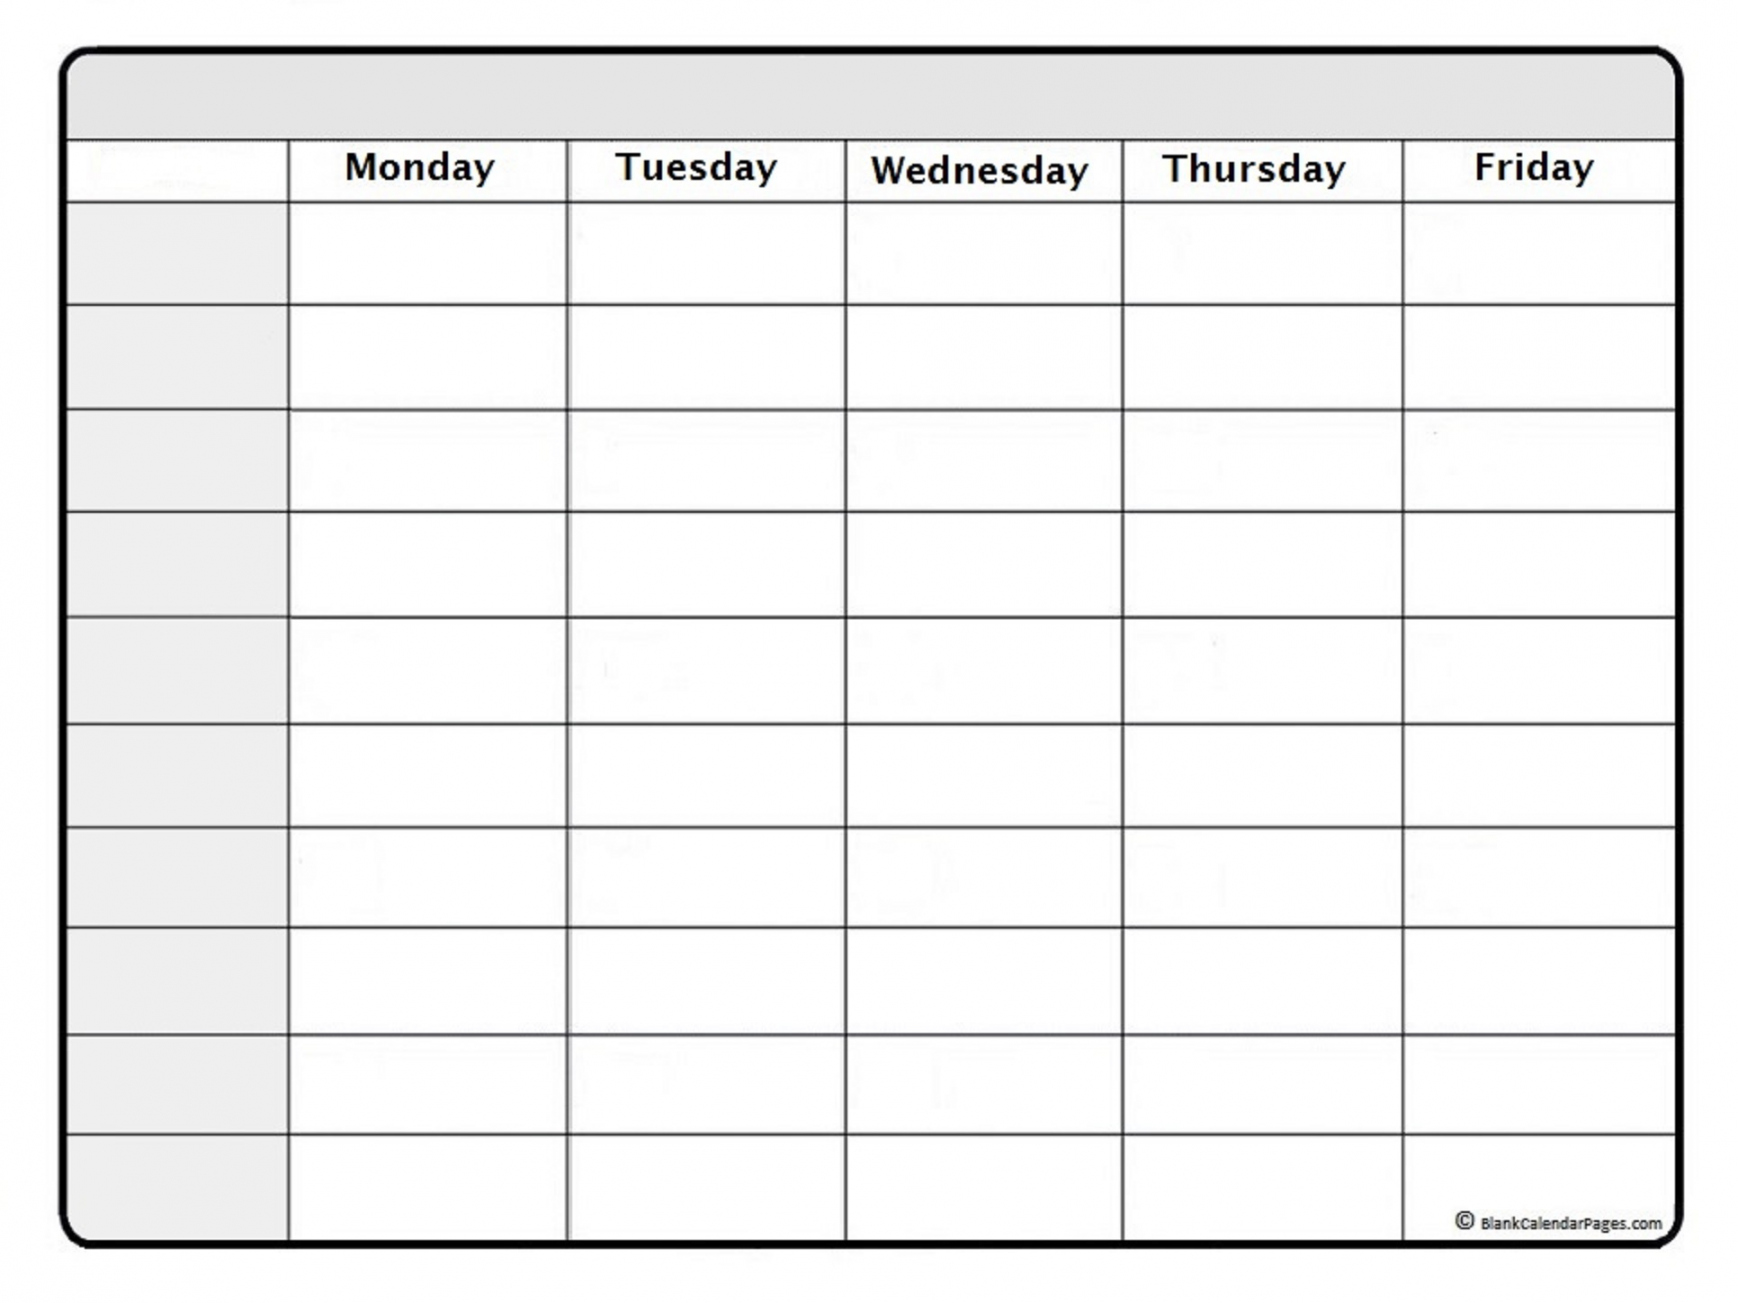 Free Printable Weekly Calendar - Printable - July  weekly calendar  July  weekly calendar template